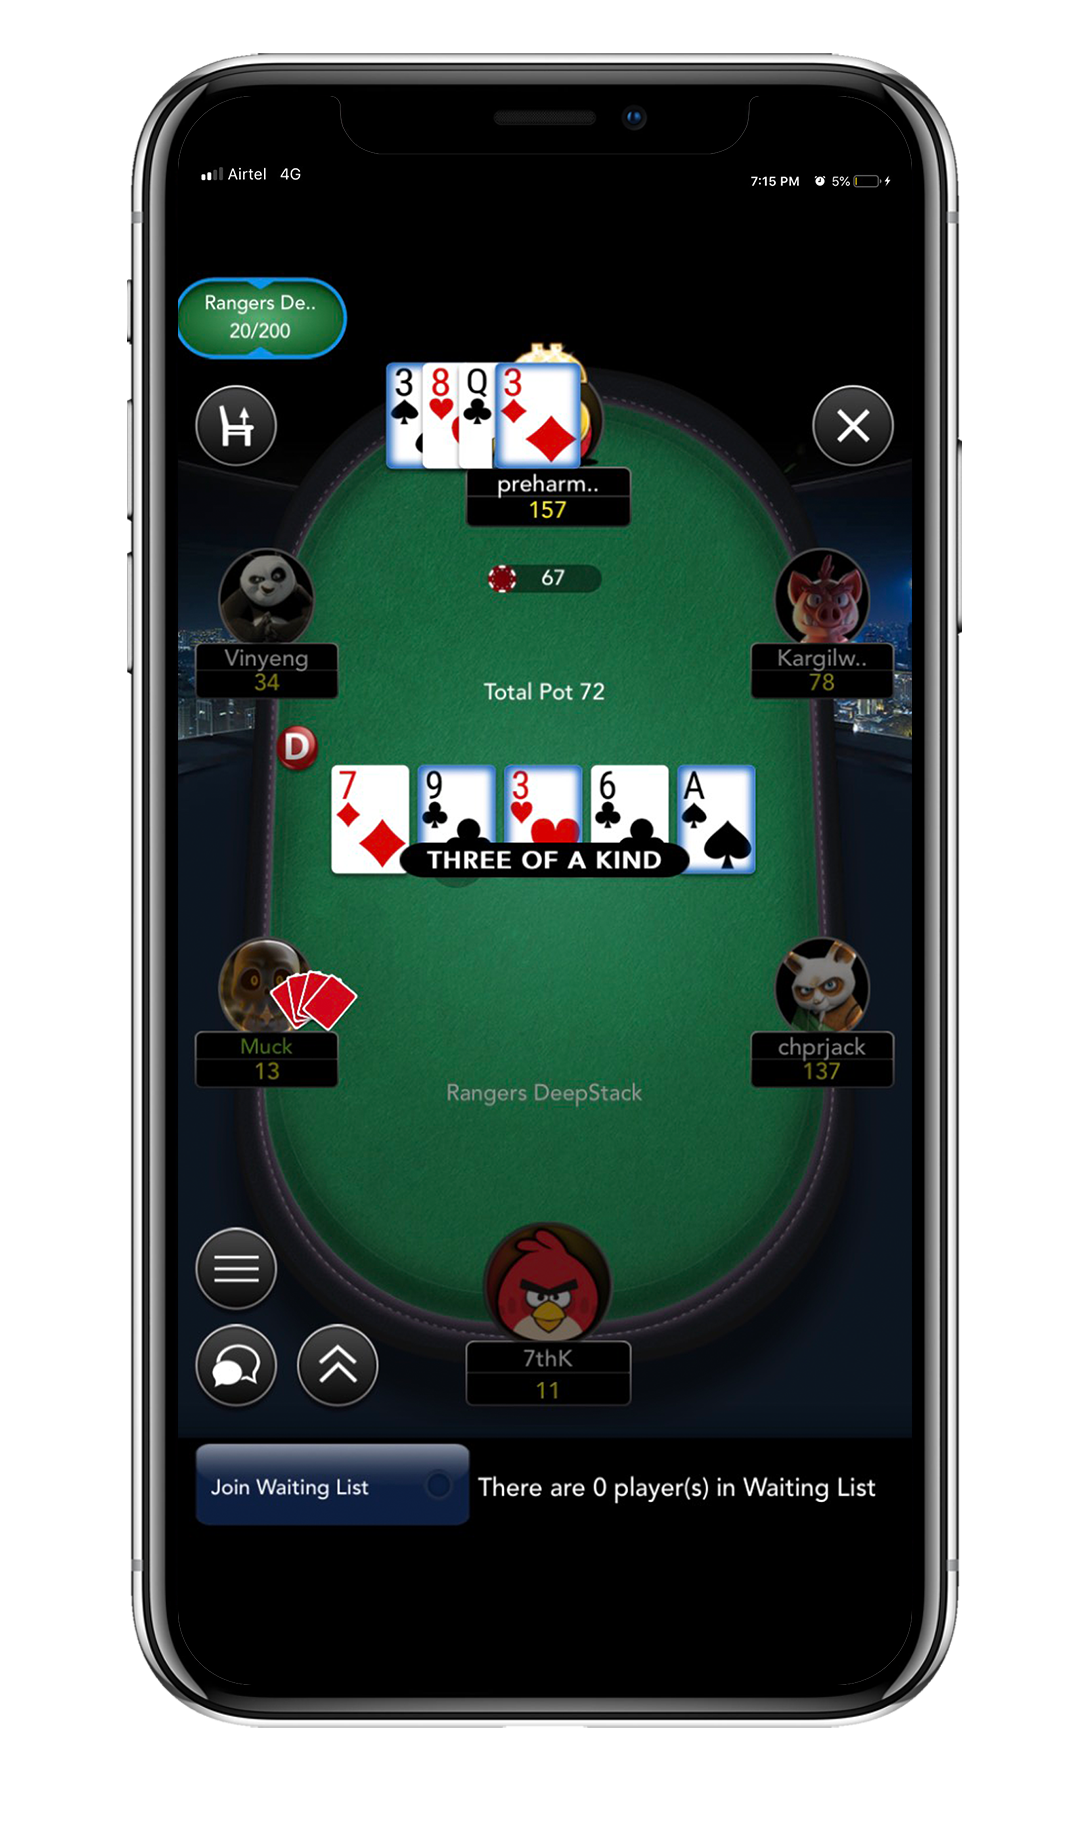 Online poker ipad app real money